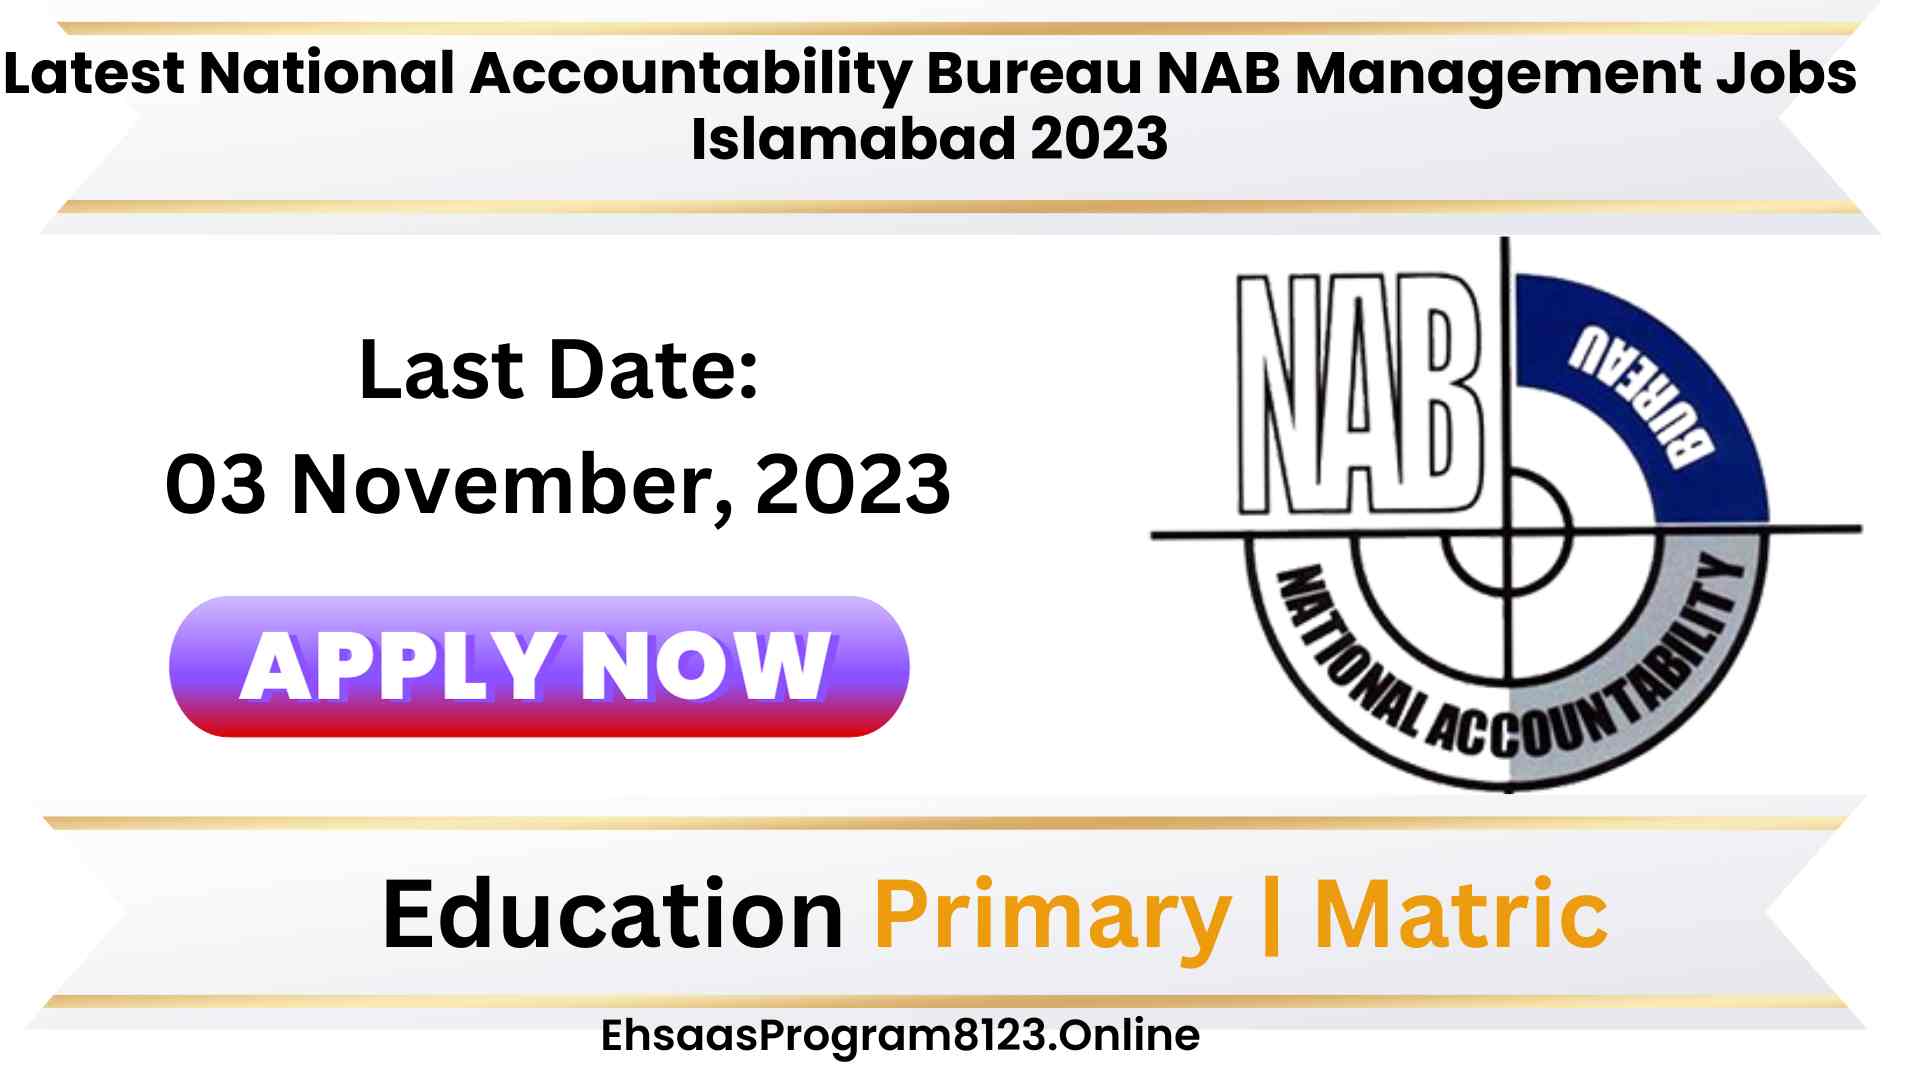 Latest National Accountability Bureau NAB Management Jobs Islamabad 2023